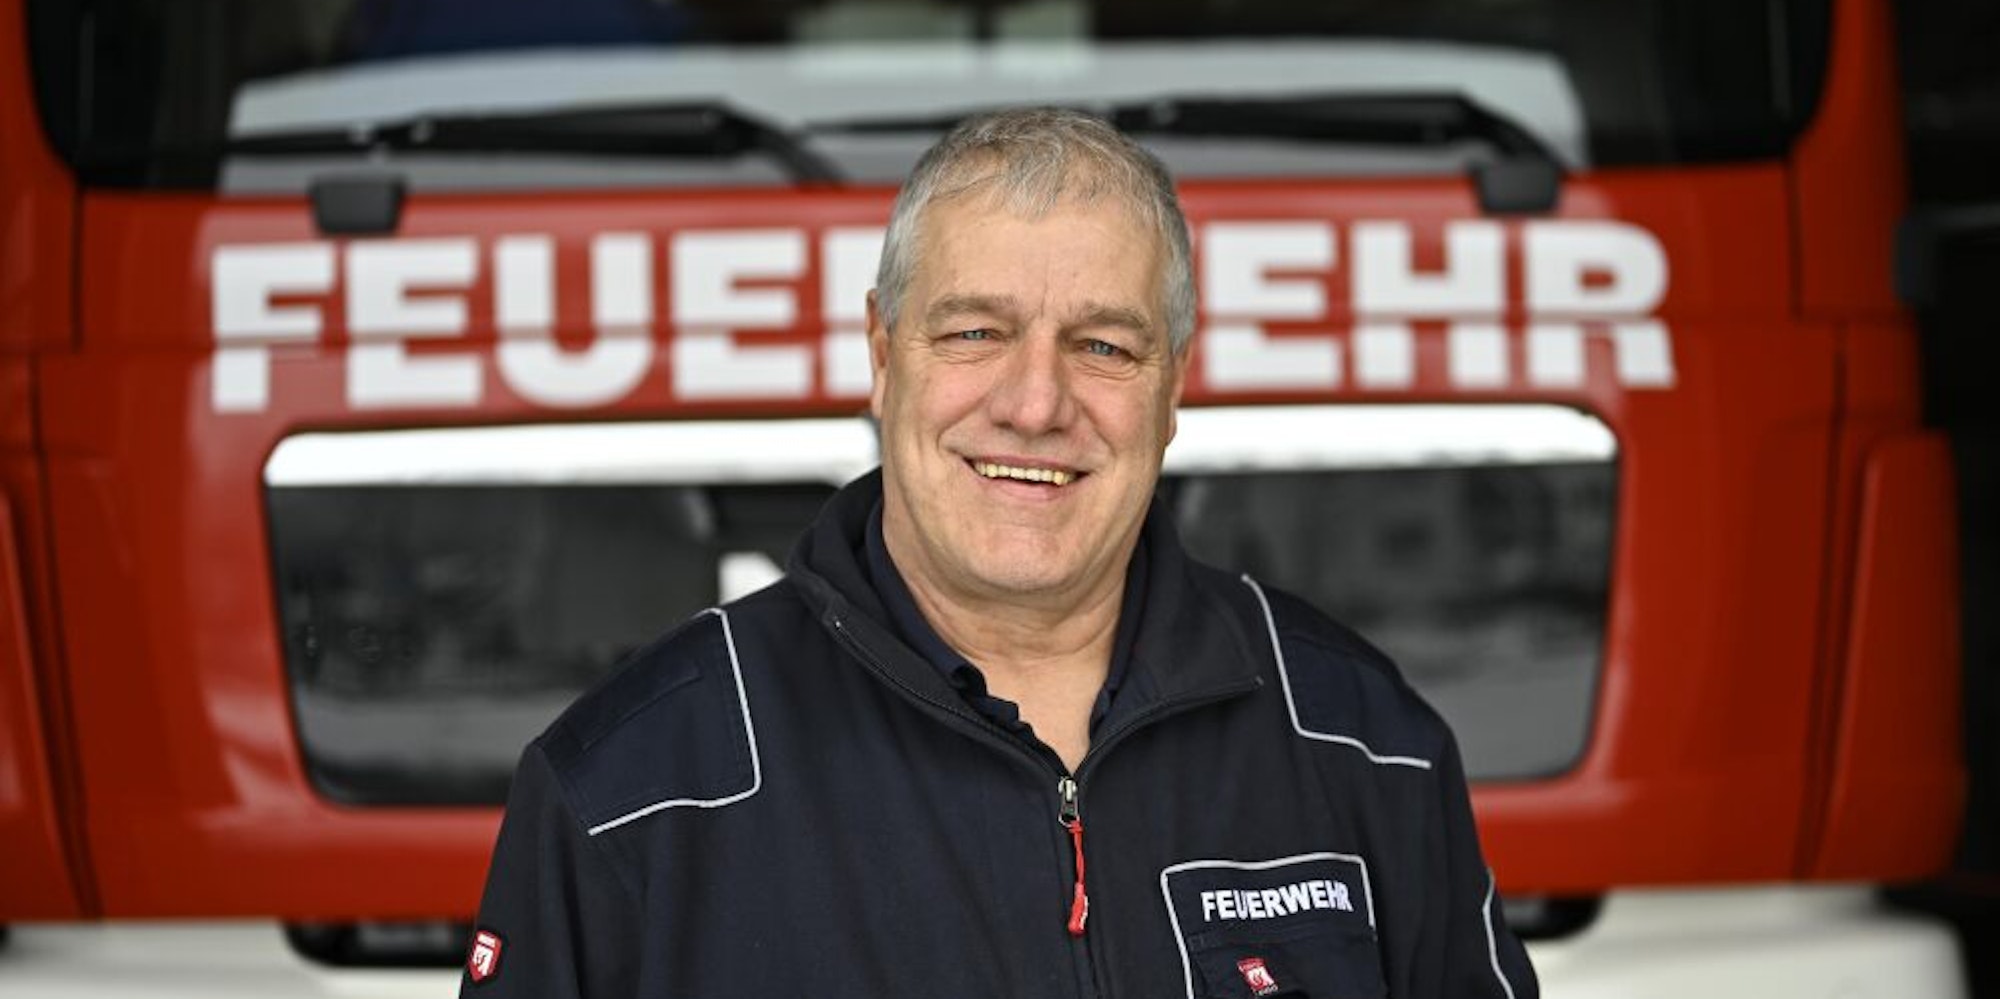 Detlef Hayer ist seit 1982 Mitglied der Freiwilligen Feuerwehr.